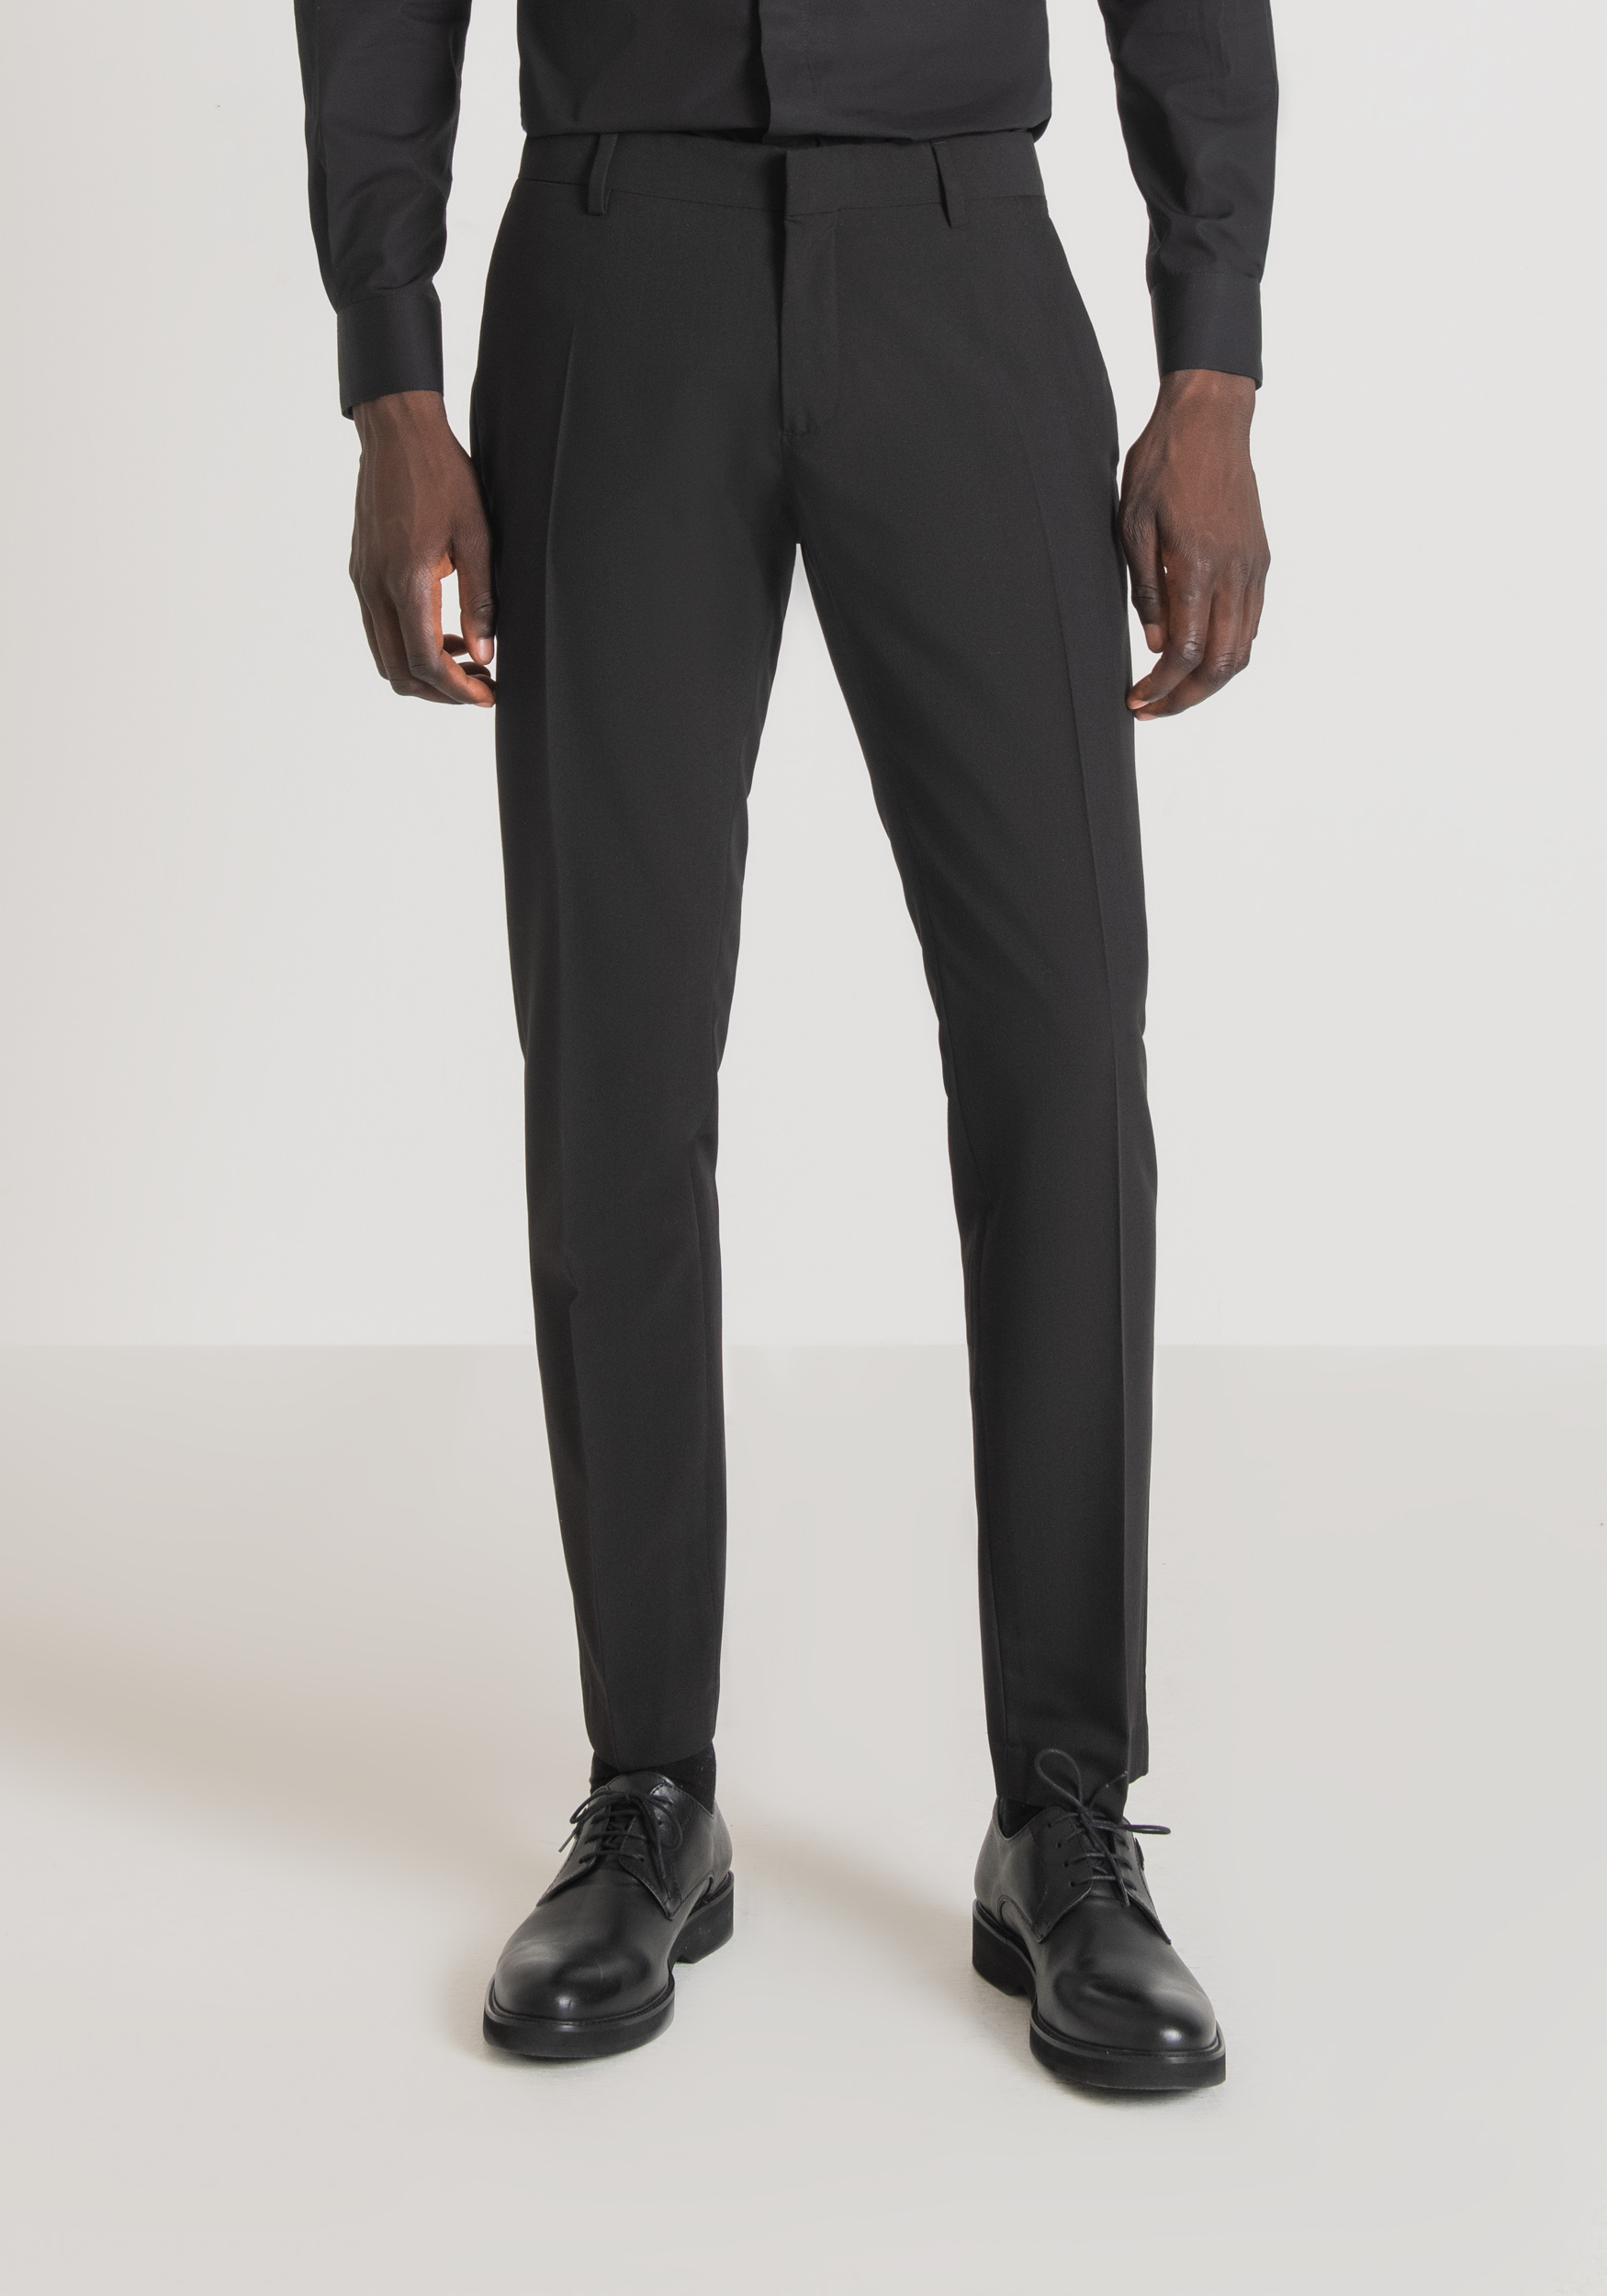 Antony Morato Pantalon Slim Fit Bonnie En Viscose Melangee Elastique Noir | Homme Pantalons